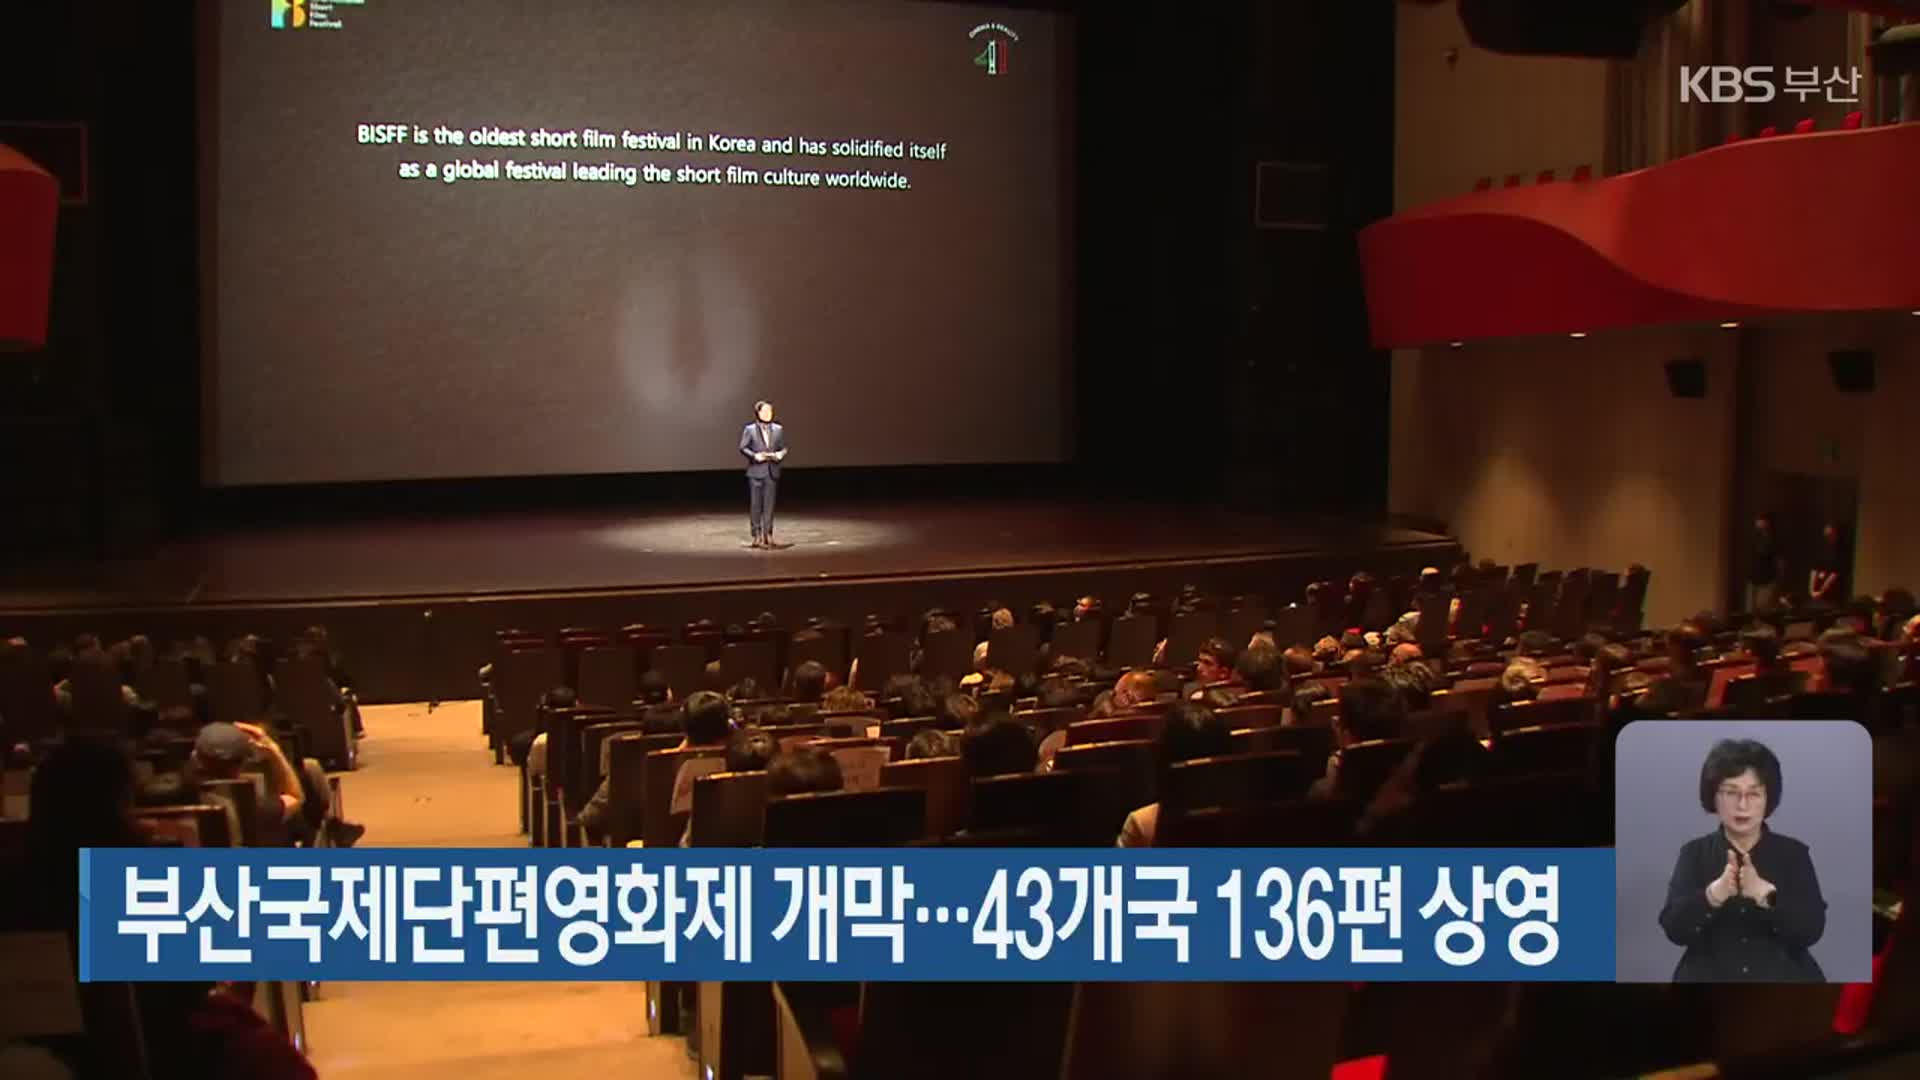 부산국제단편영화제 개막…43개국 136편 상영